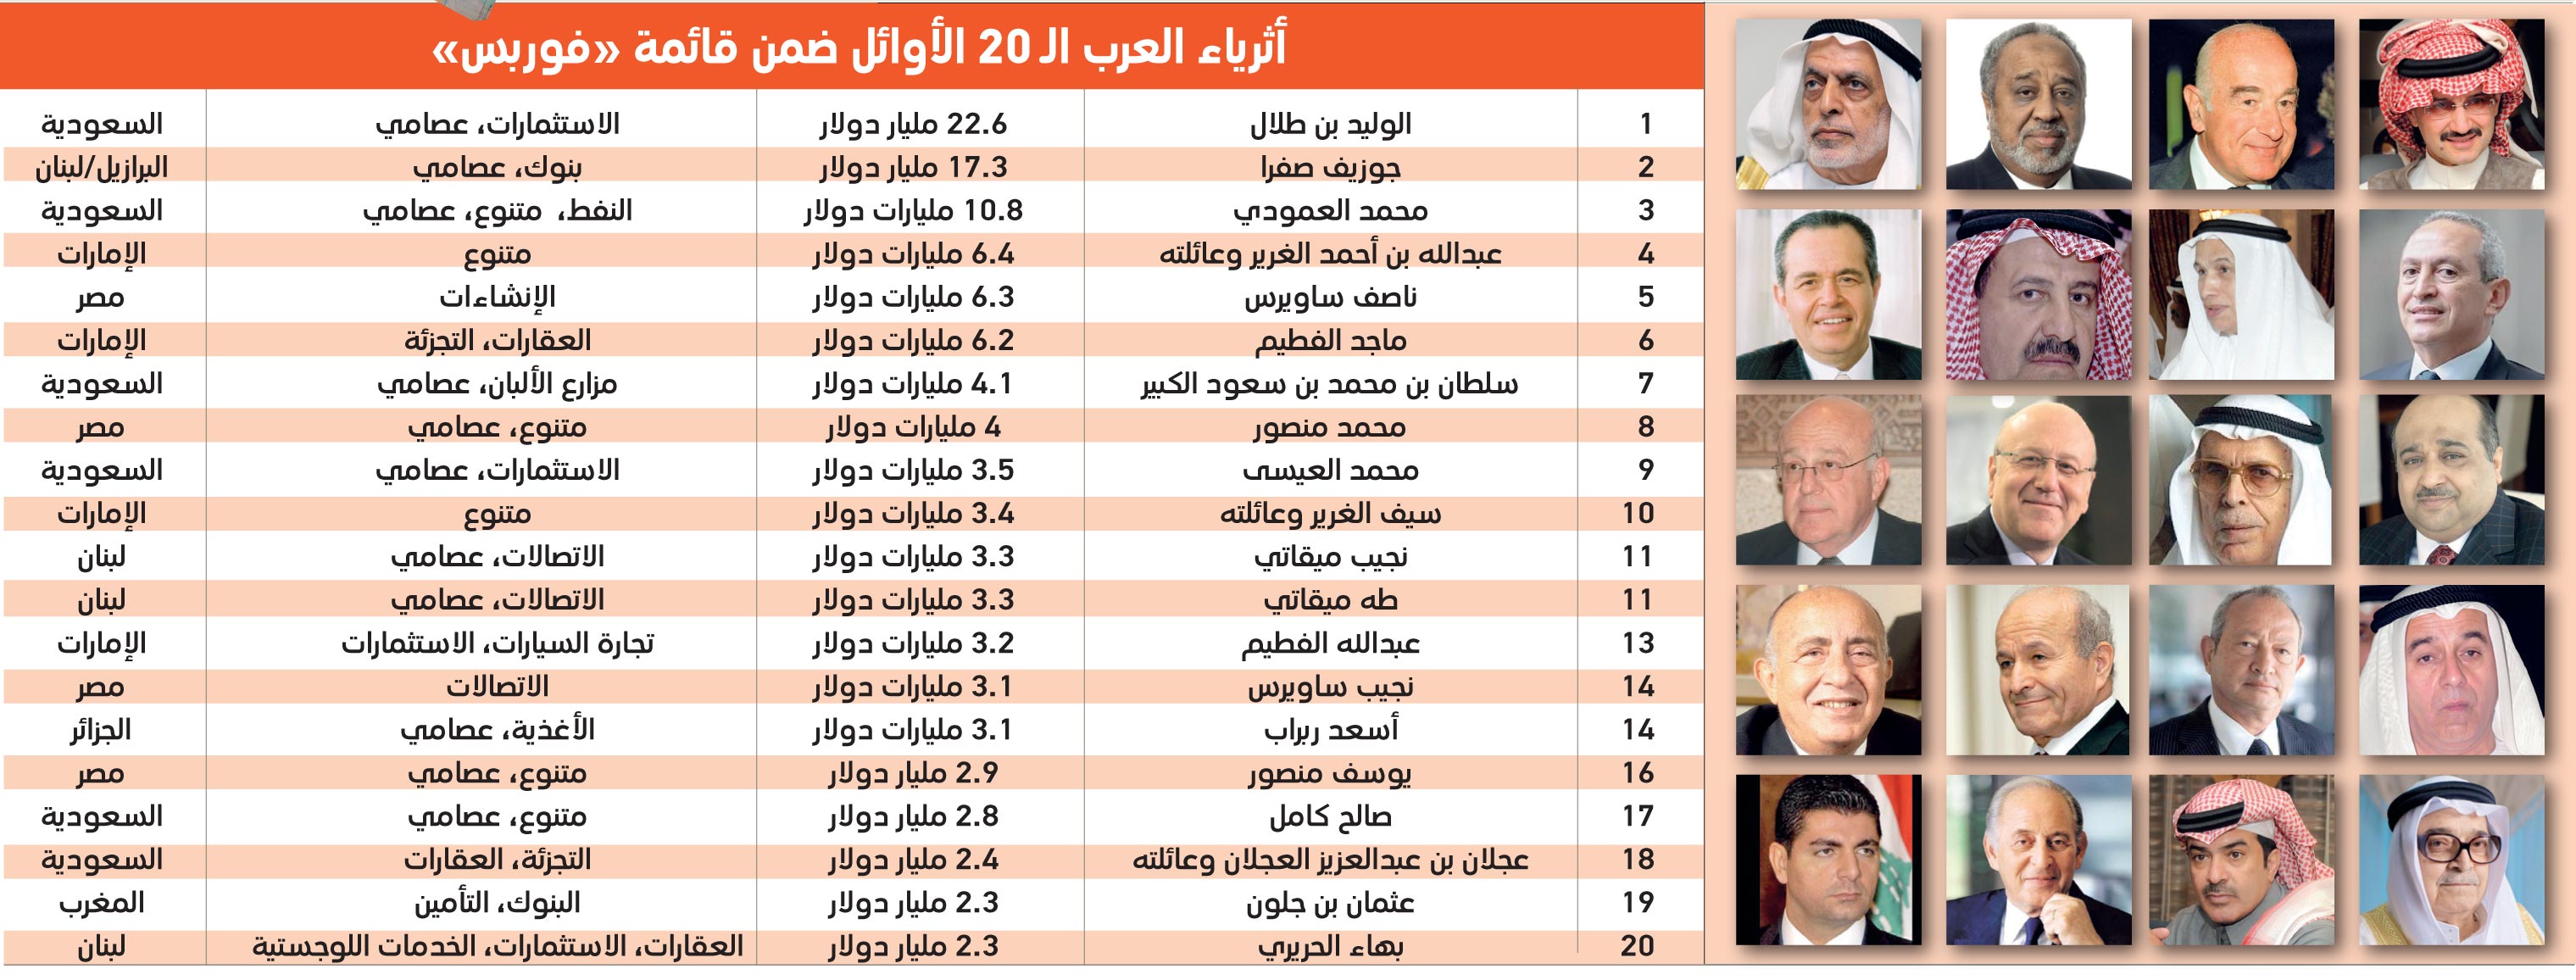 "فوربس": الإماراتيون في المرتبة الرابعة عربيا بقائمة أثرياء العرب